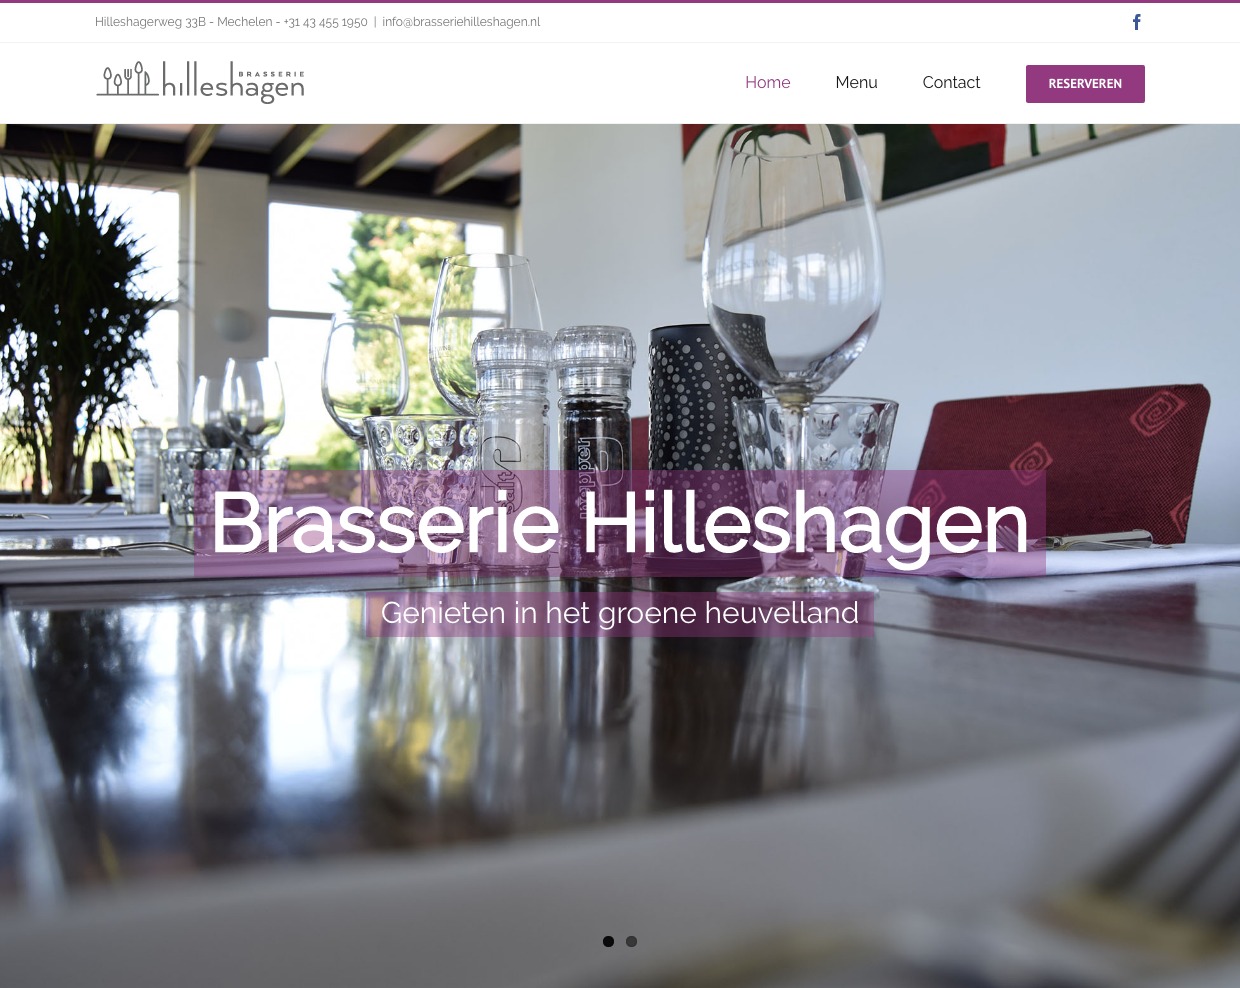 Brasserie Hilleshagen